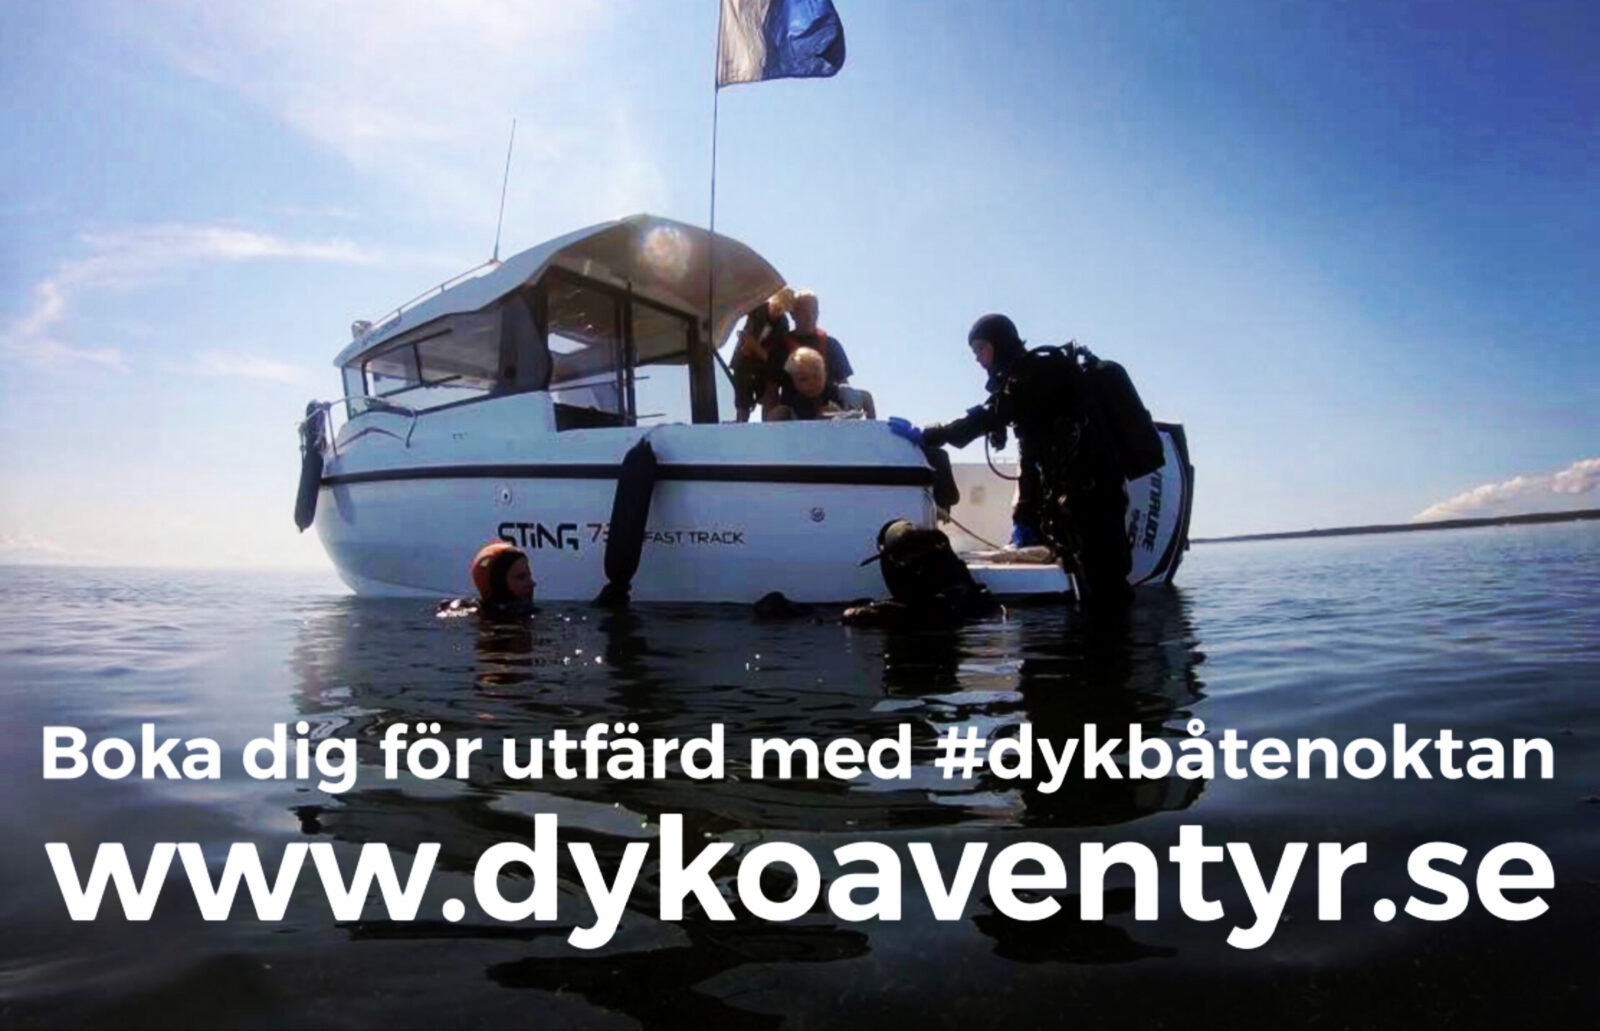 Boka Nu!Dagliga utfärder med #dykbåtenoktan 11/7 – 6/8